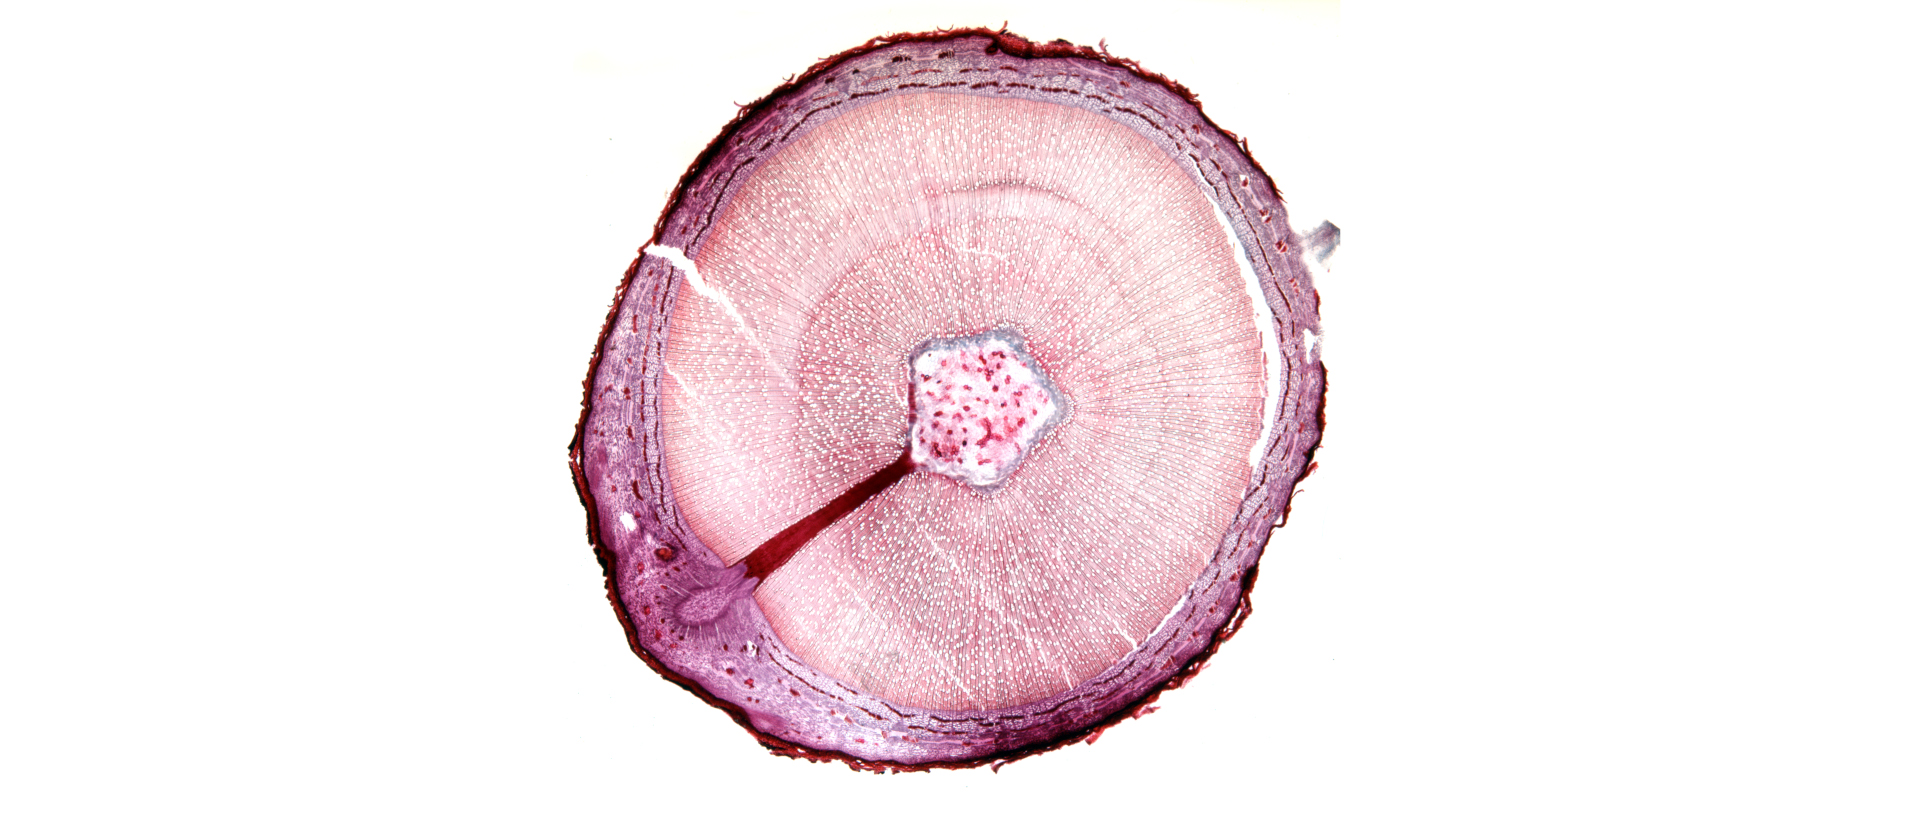 Tronco d'albero al microscopio